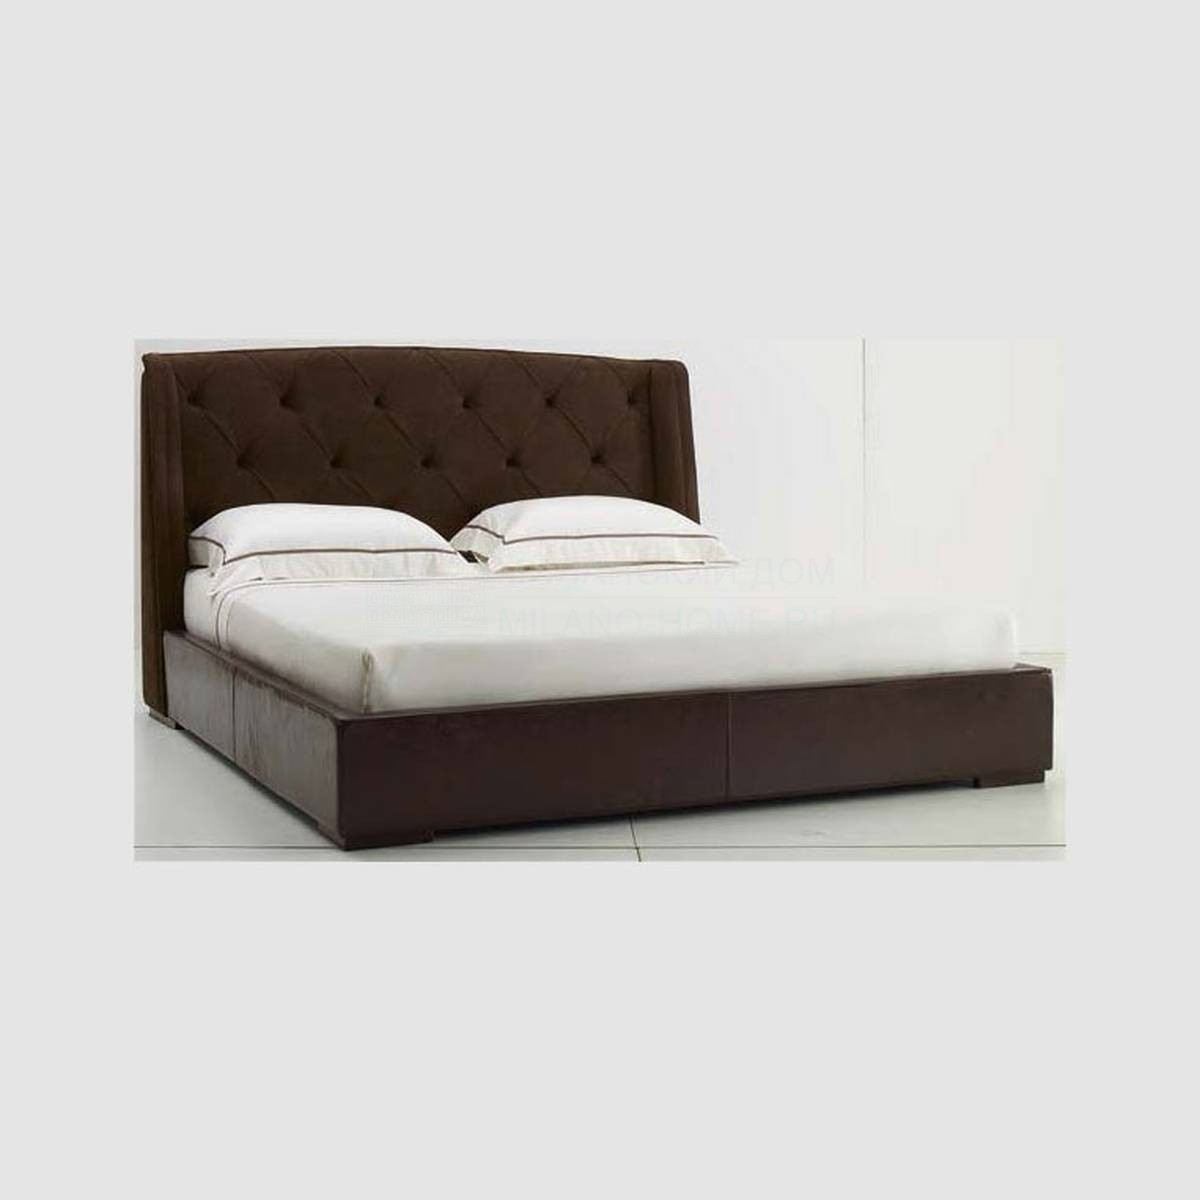 Кровать с мягким изголовьем Damien Bed из Италии фабрики ULIVI